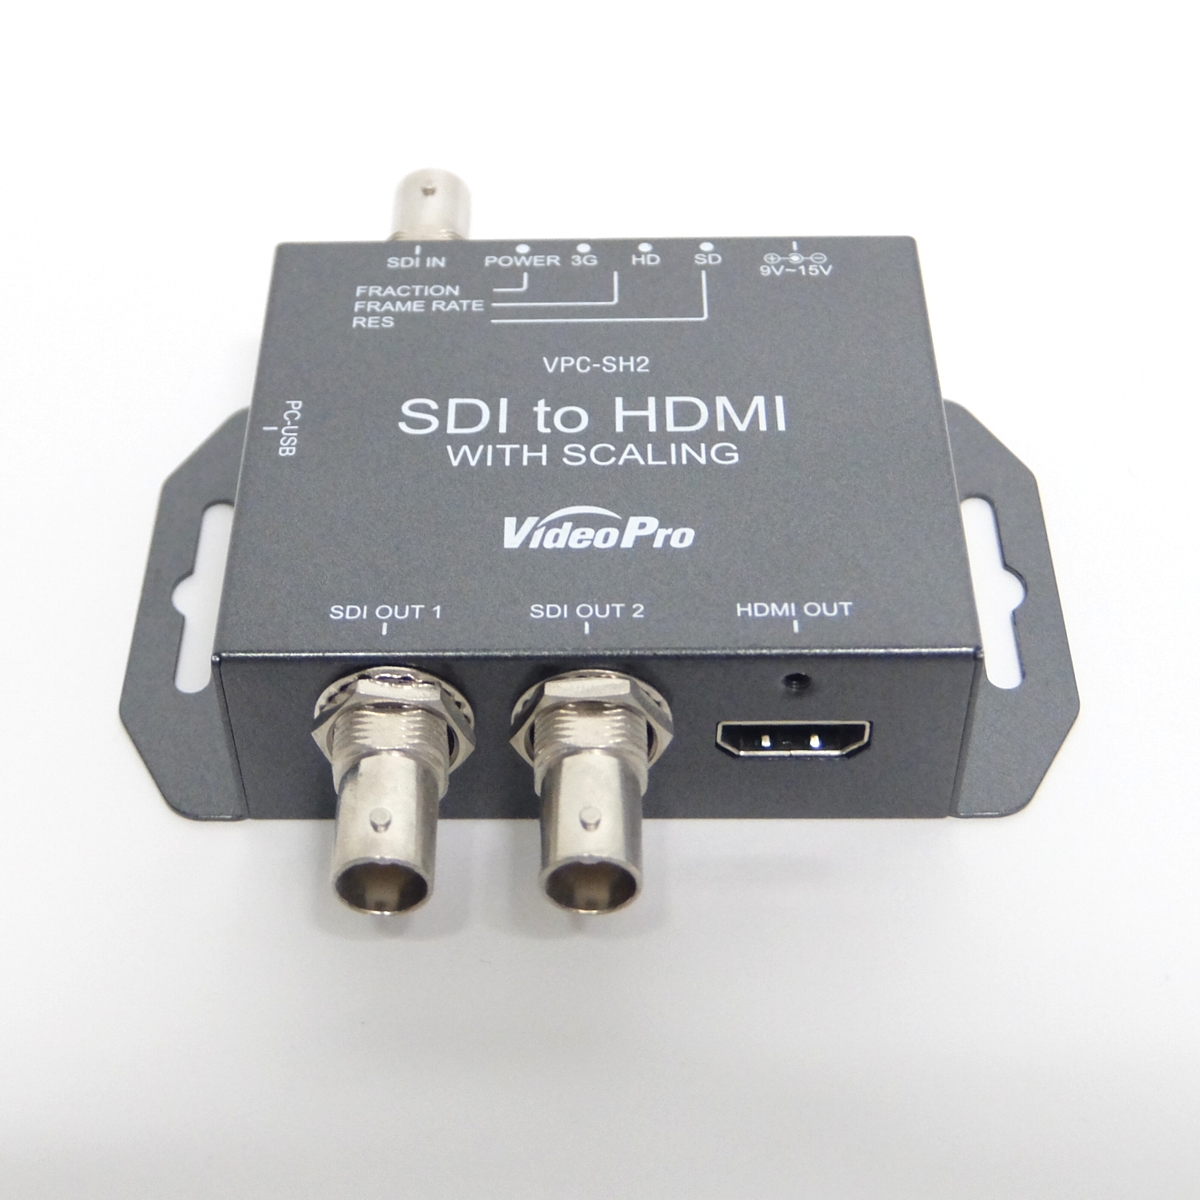 【中古】MEDIAEDGE VideoProシリーズ VPC-SH2 SDI to HDMI コンバーター 【送料無料】